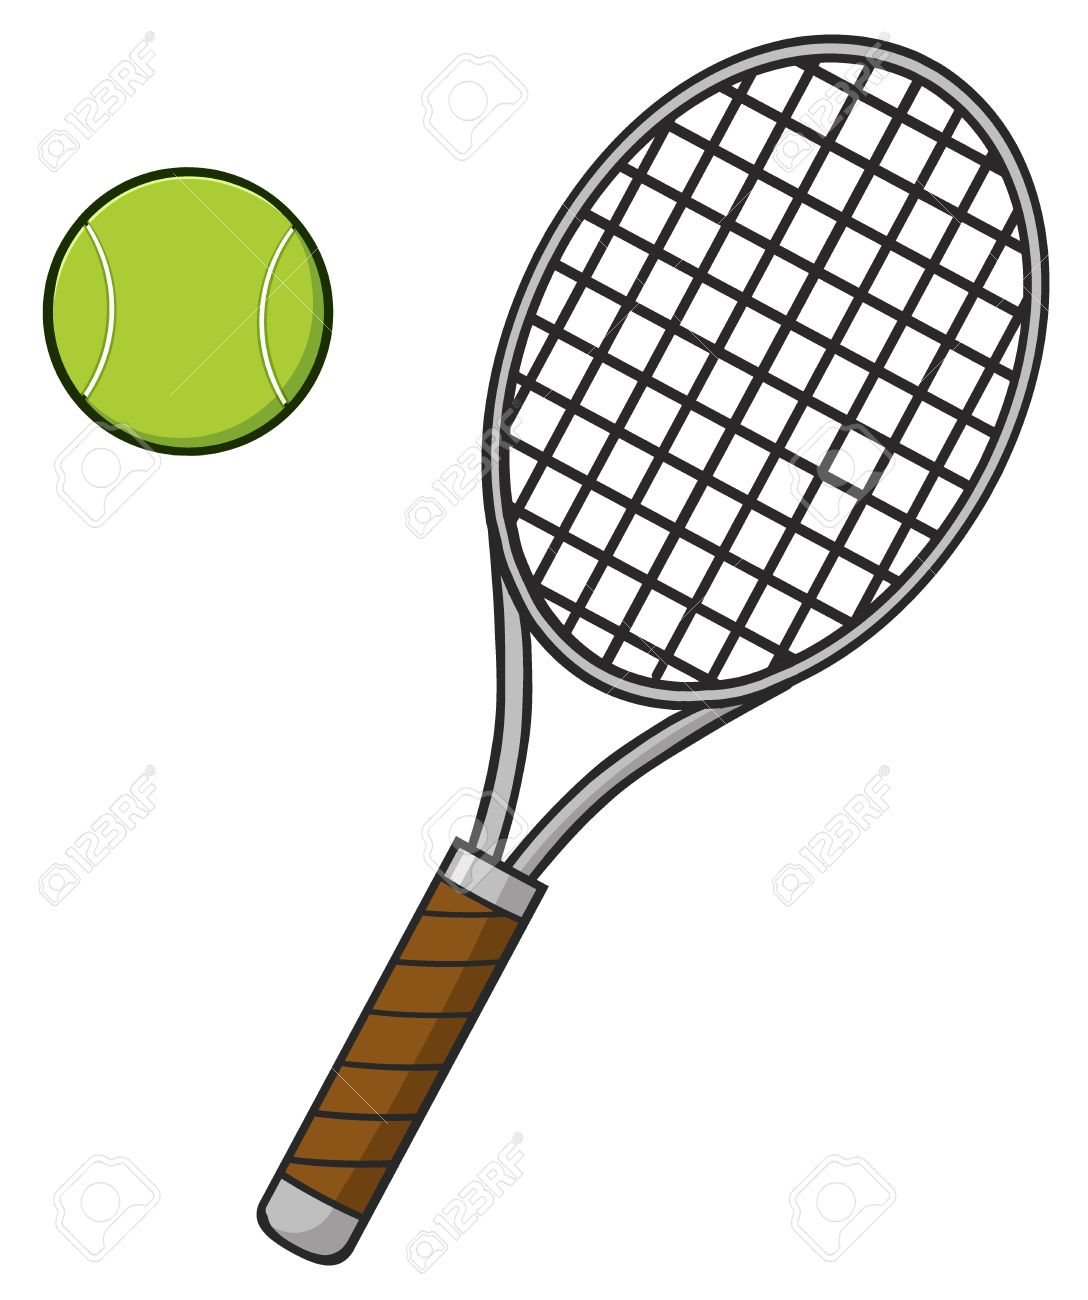 tennis-img